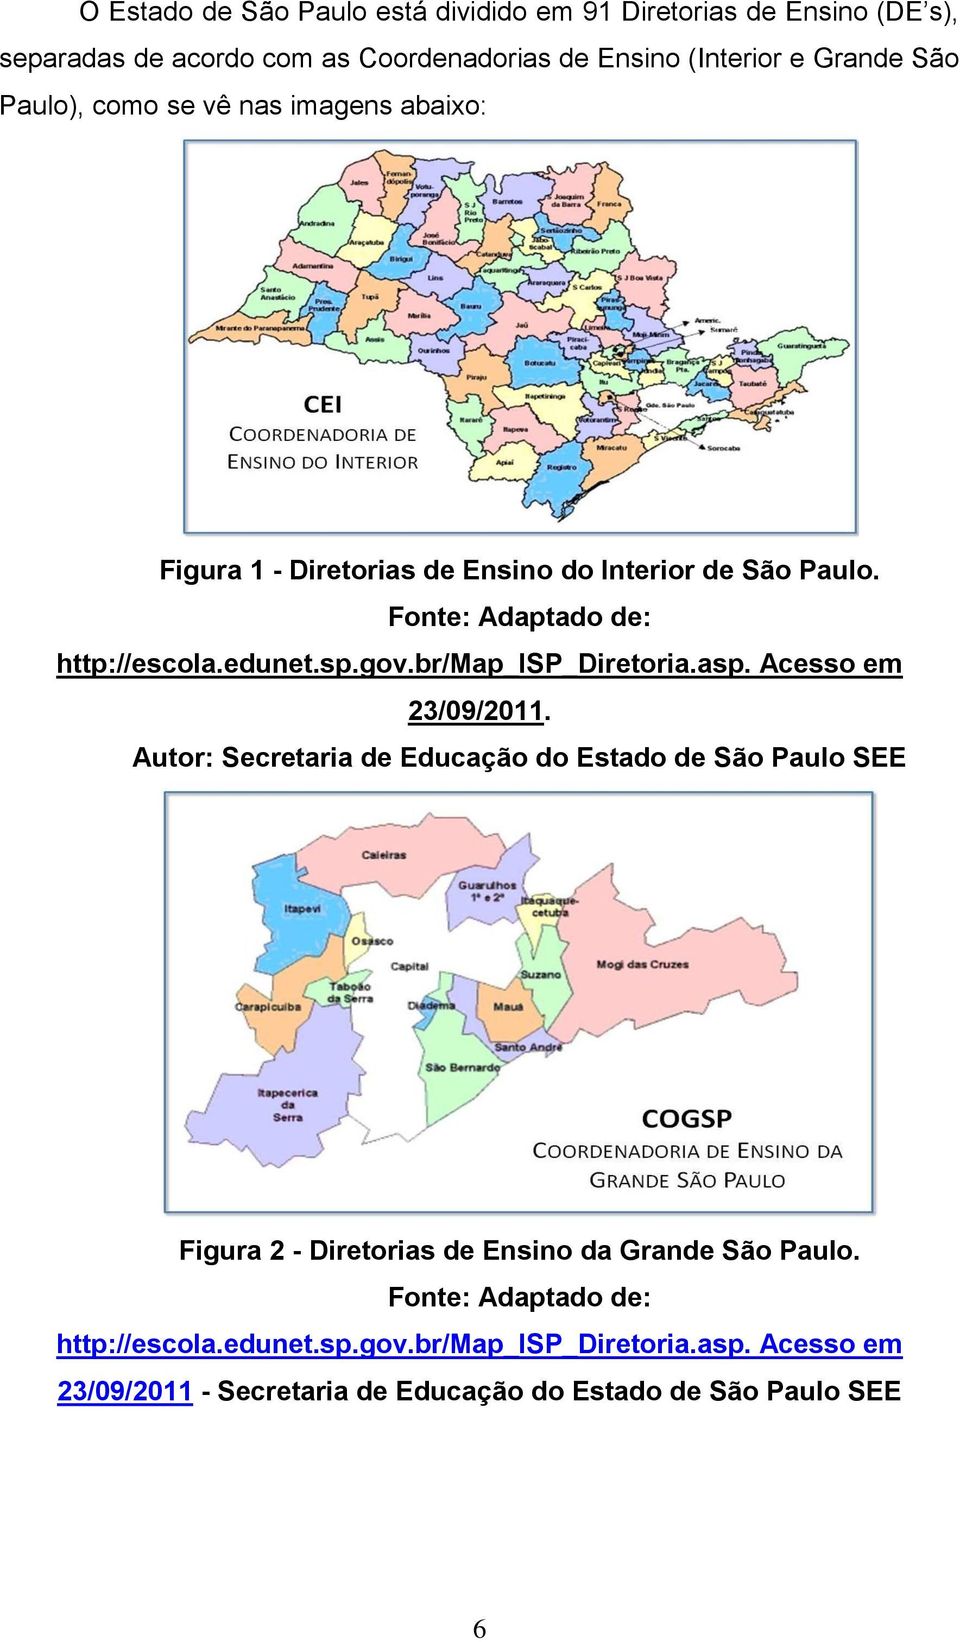 br/map_isp_diretoria.asp. Acesso em 23/09/2011.